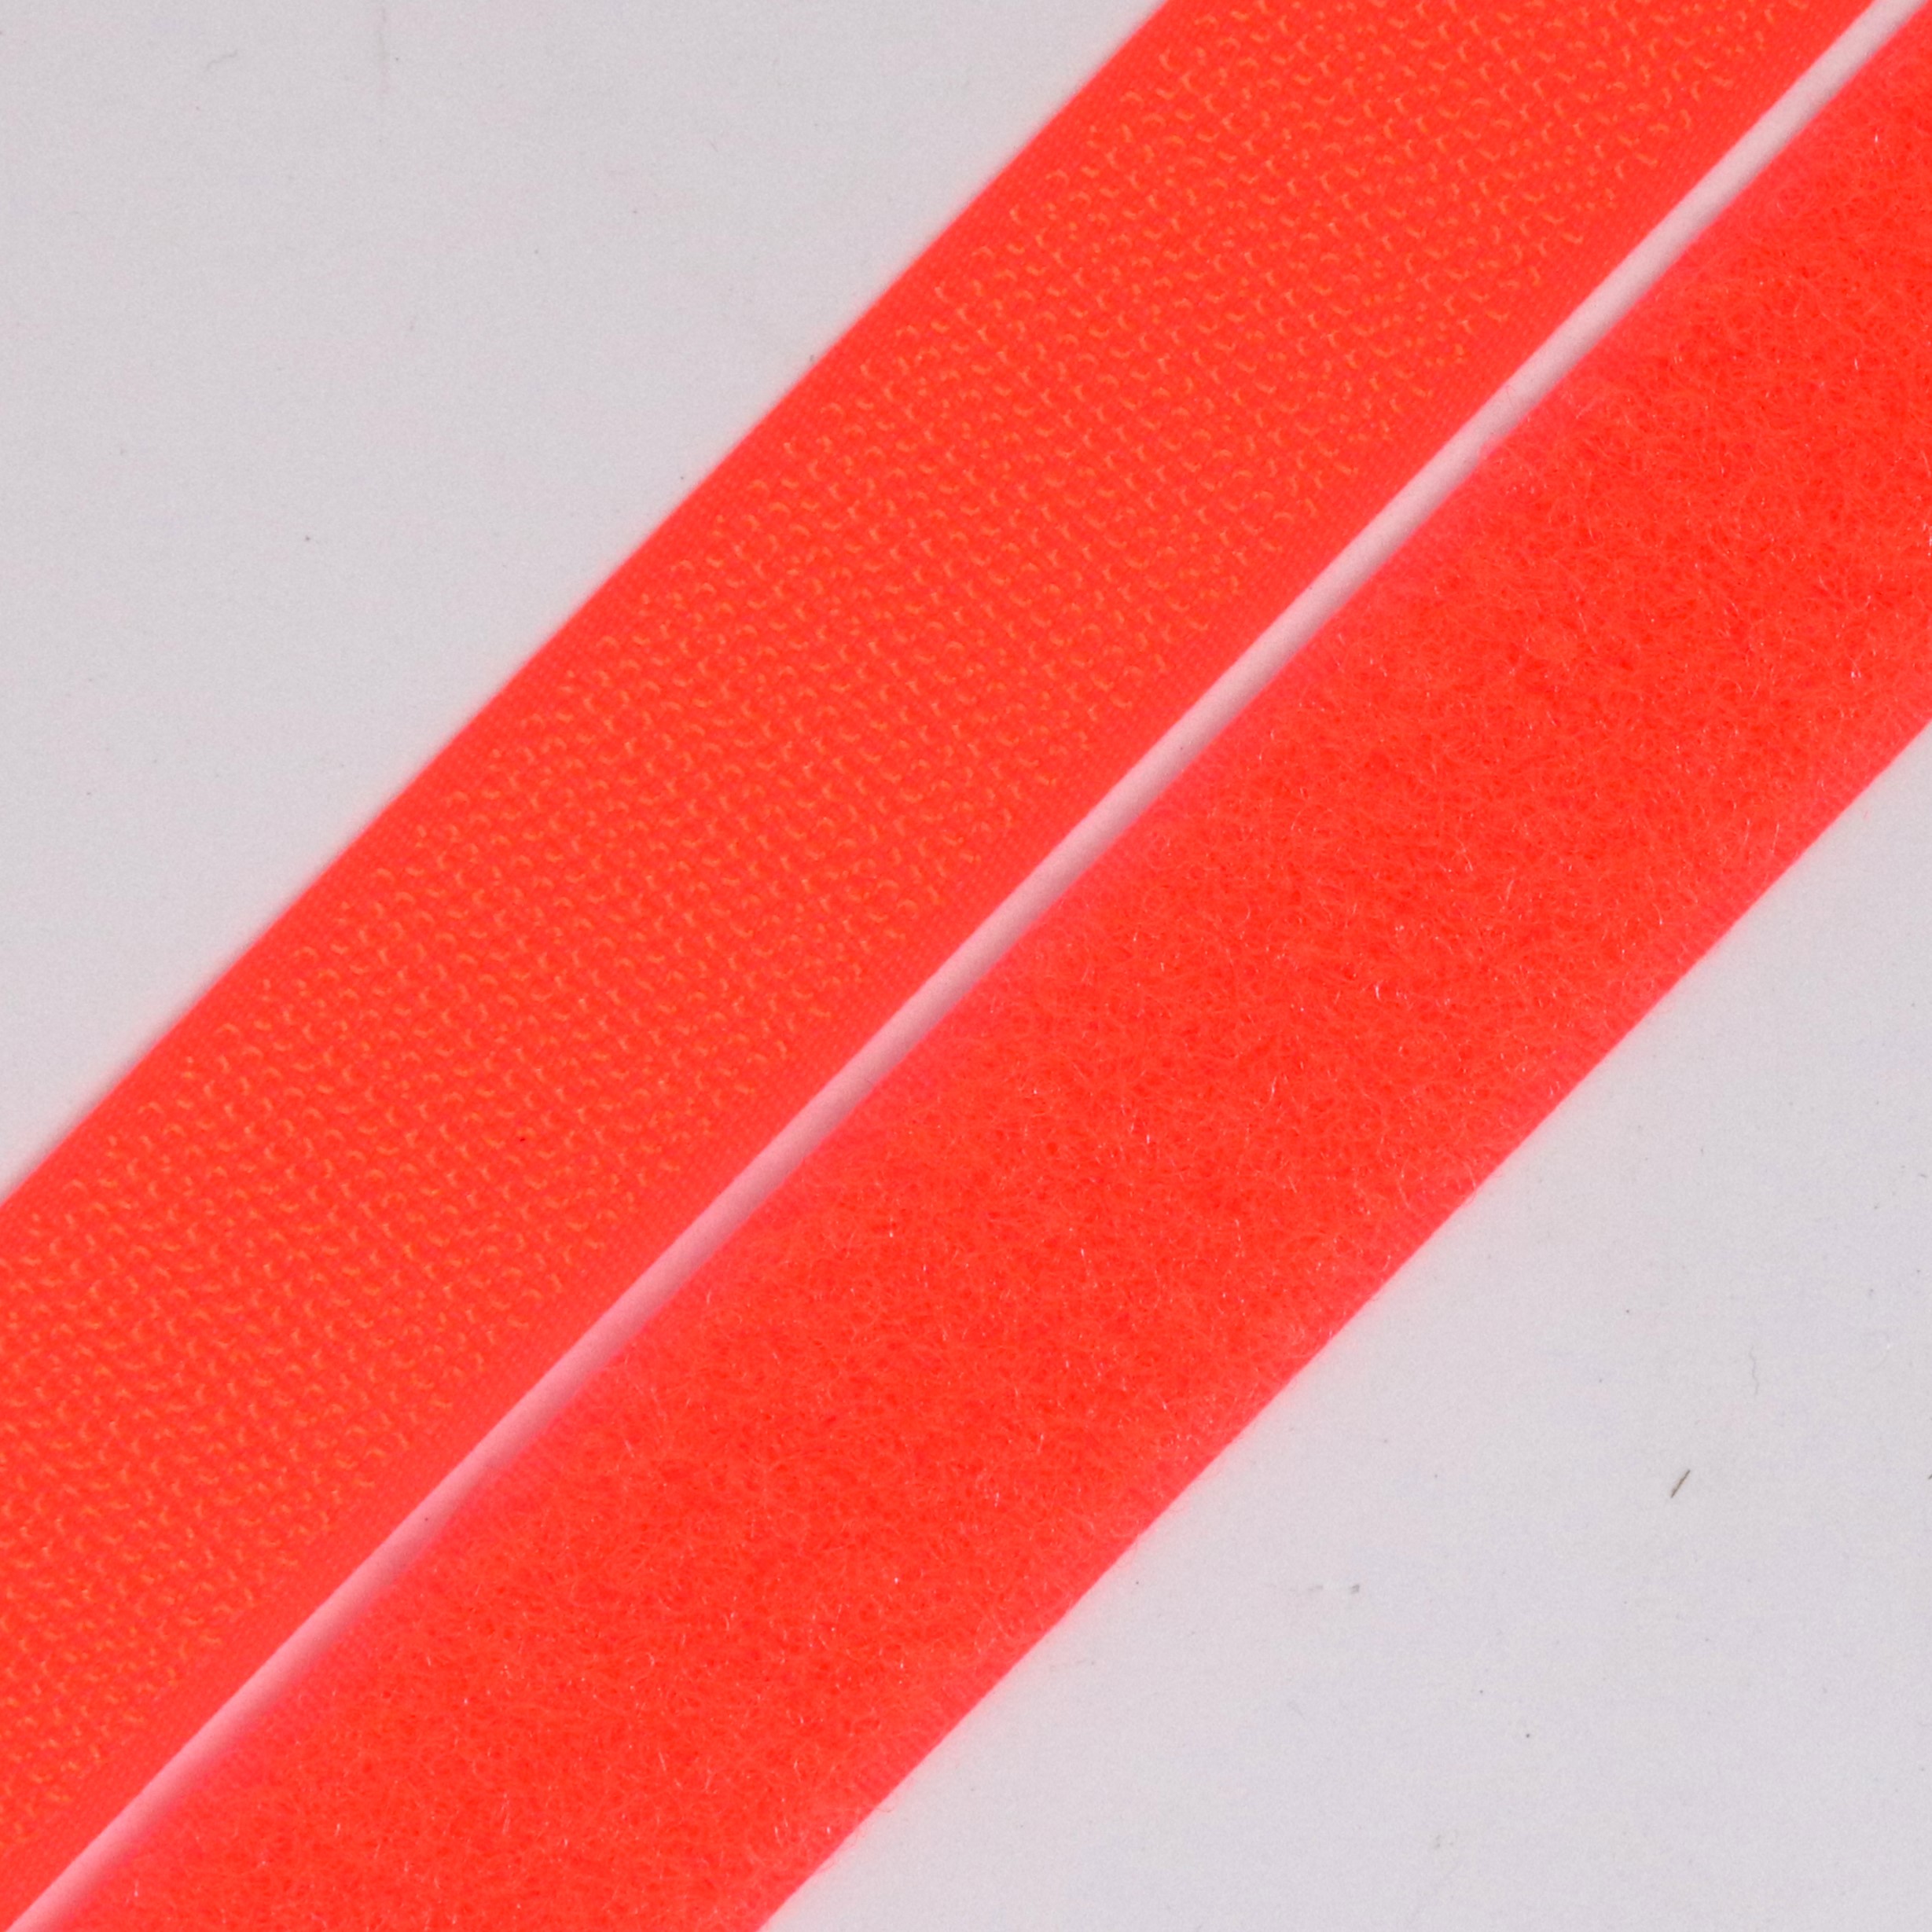 Suchý zip háèek + plyš 25 mm reflexní oranžová, návin 25m - zvìtšit obrázek